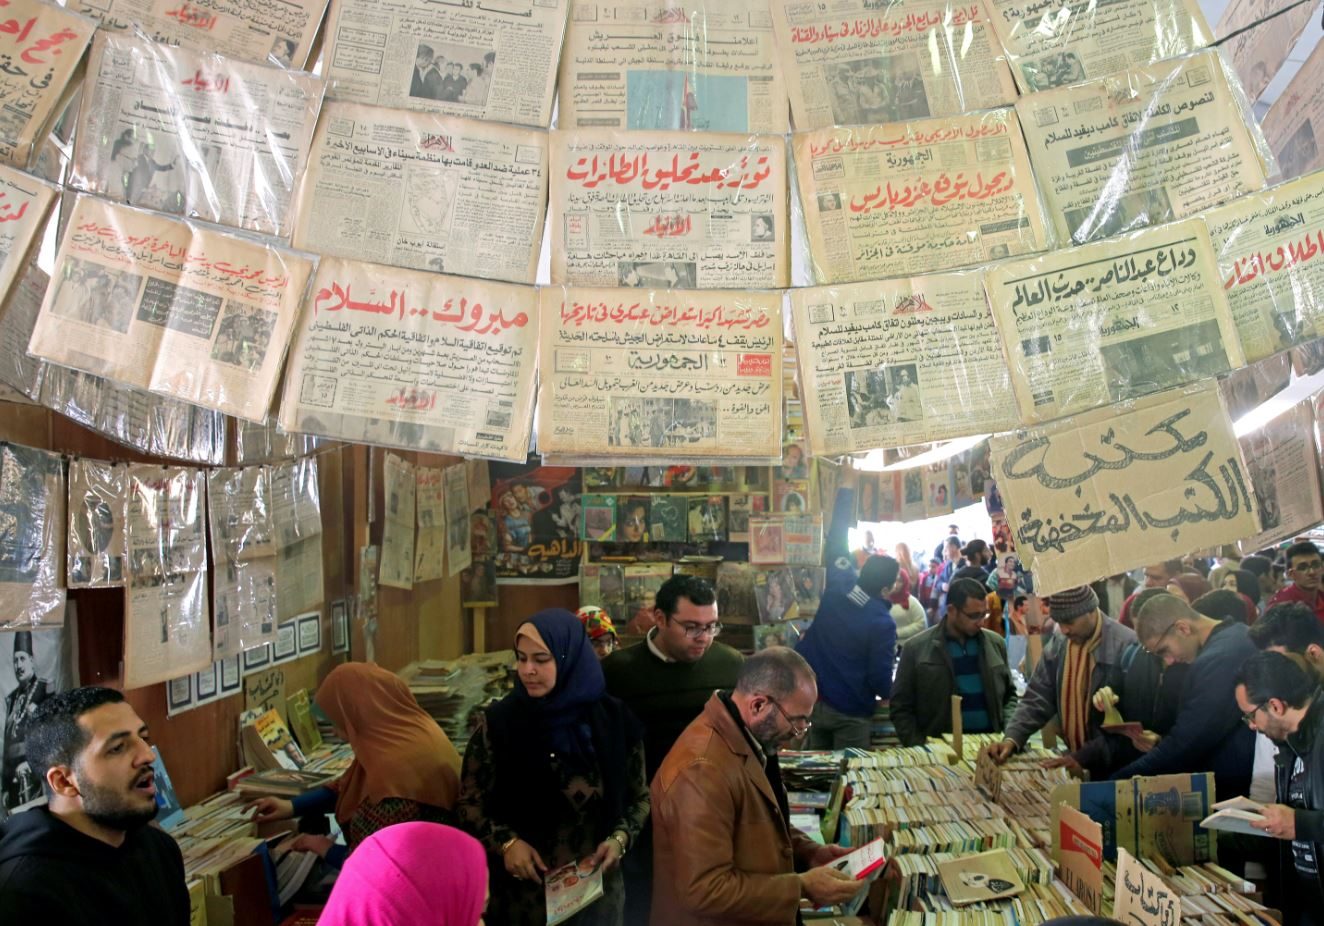 الحكومة المصرية تمنع كتباً من العرض في “القاهرة الدولي للكتاب”.. بعضها ينتقد “ديكتاتورية” السلطة